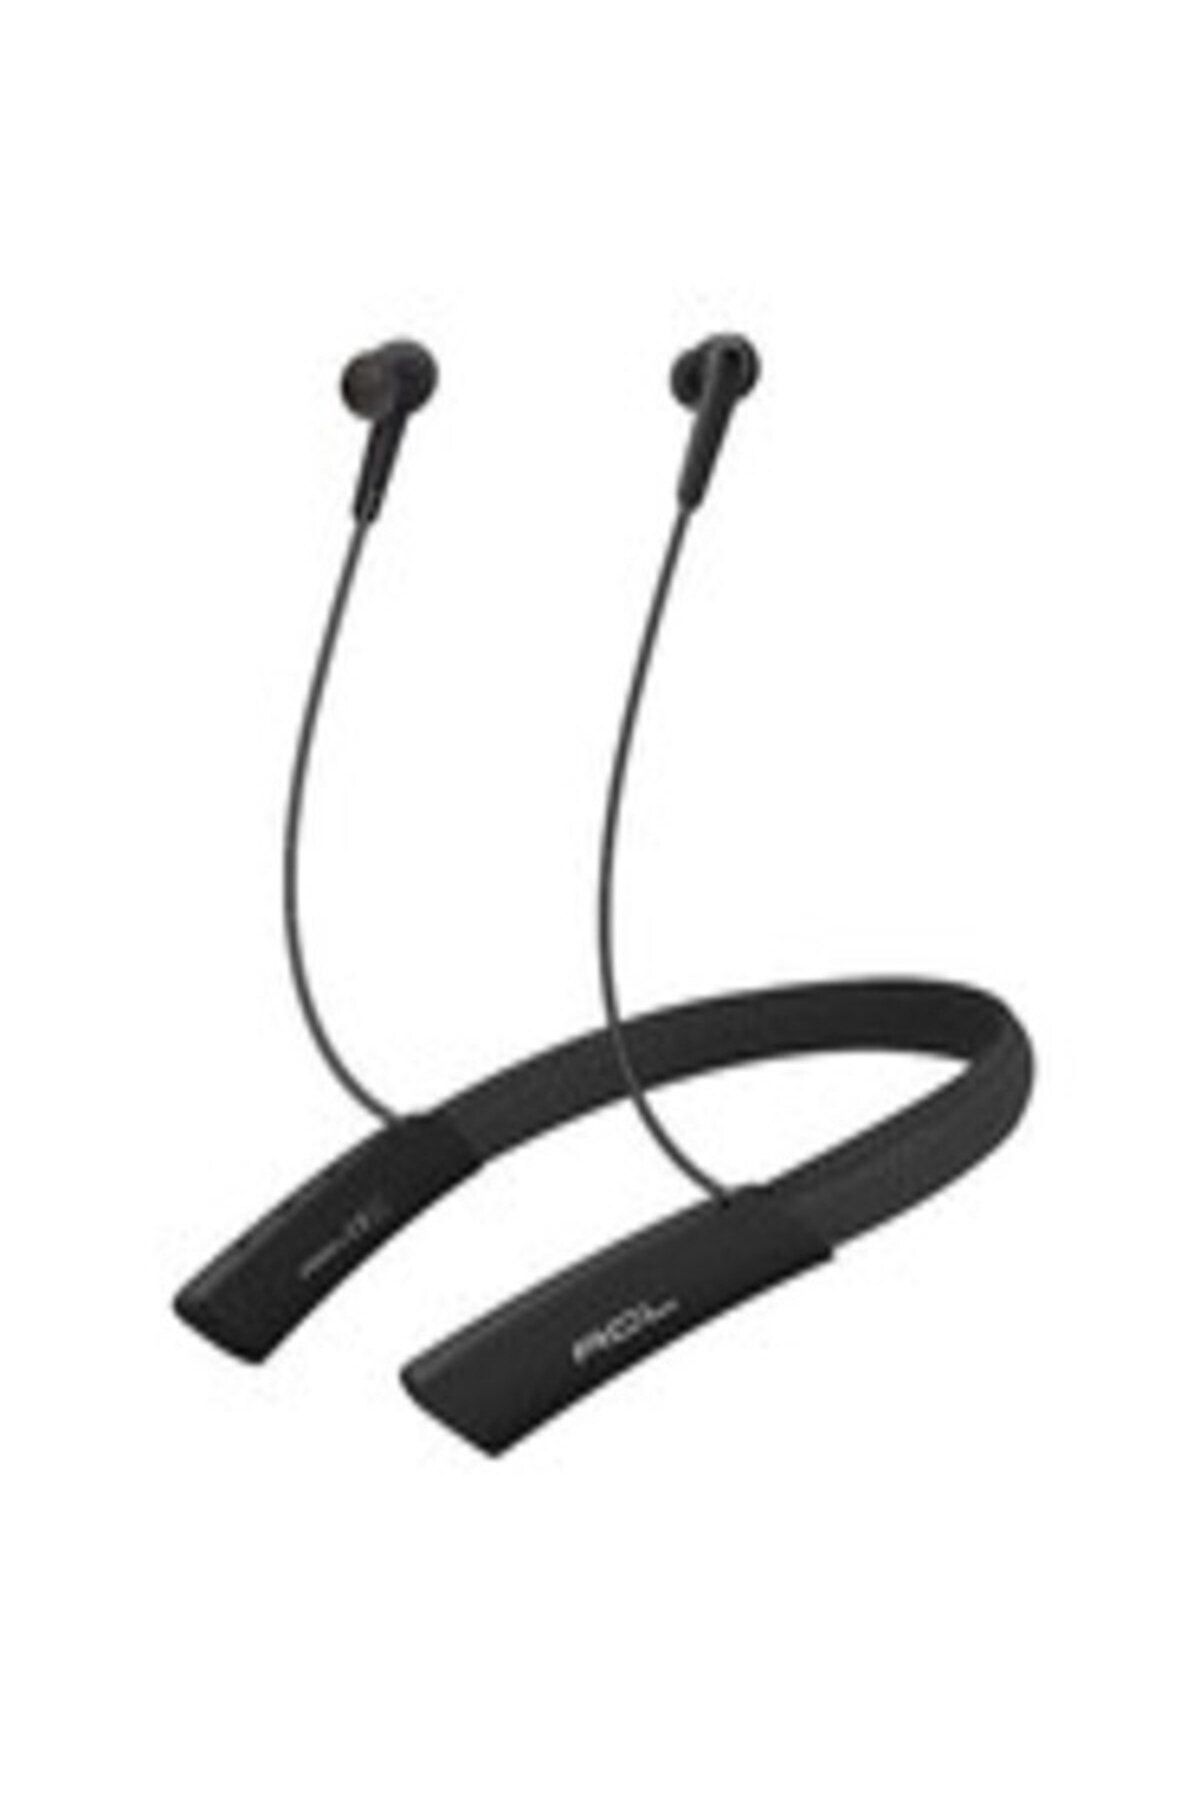 Bilişim Aksesuar Boyun Bantlı Kablosuz Kulak İçi Bluetooth Kulaklık Sporcu Kulaklığı